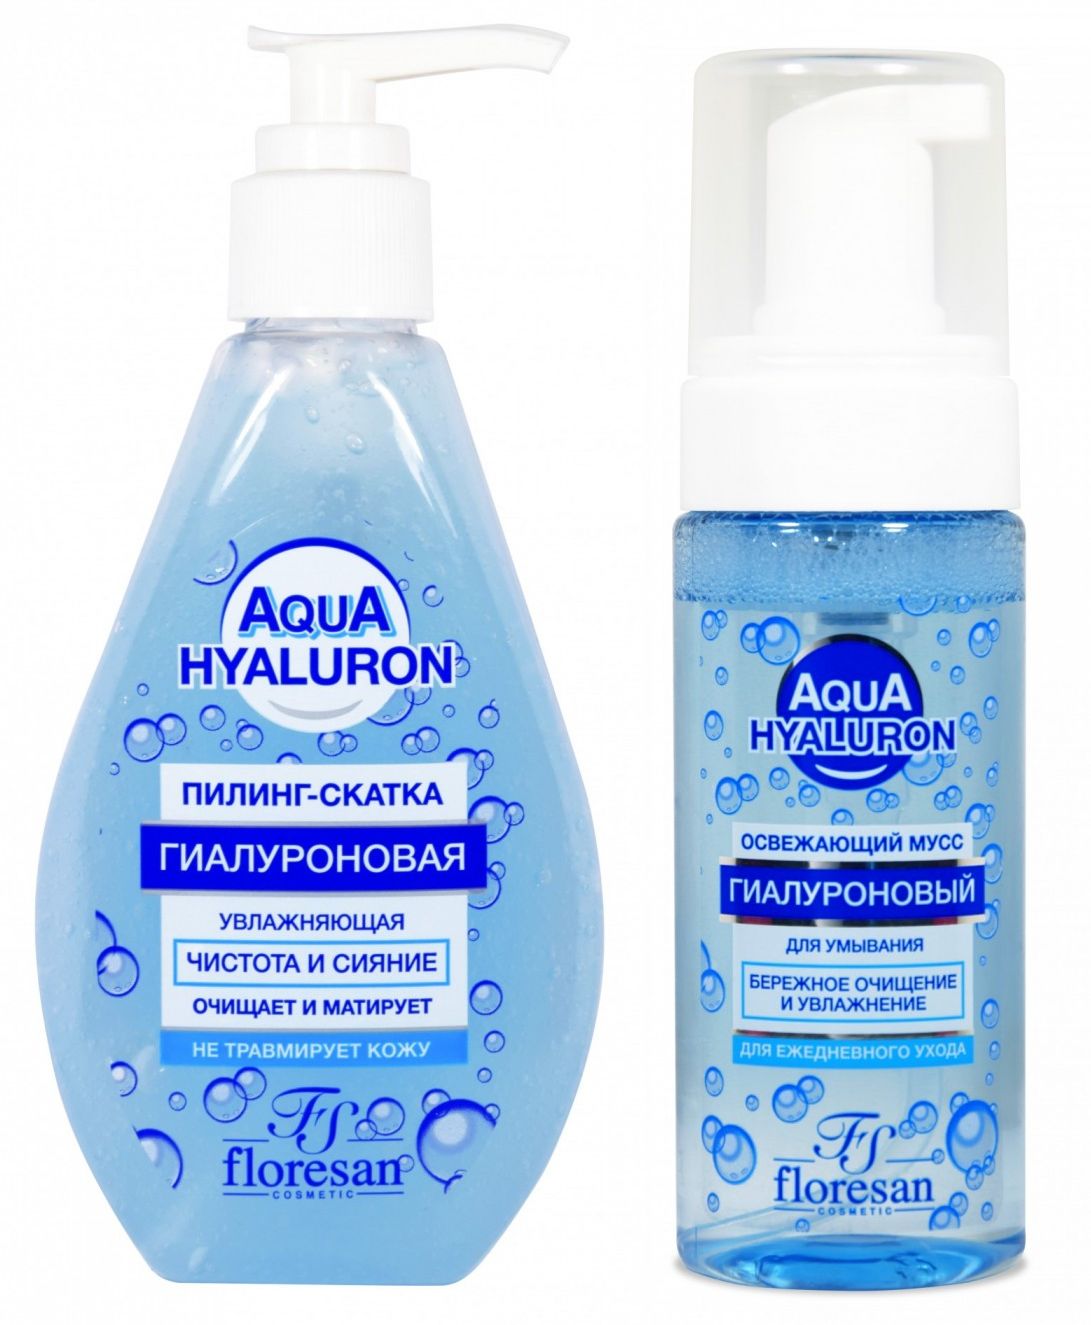 Набор Floresan Aqua Hyaluron пилинг-скатка и освежающий мусс для умывания 150 млх2 шт